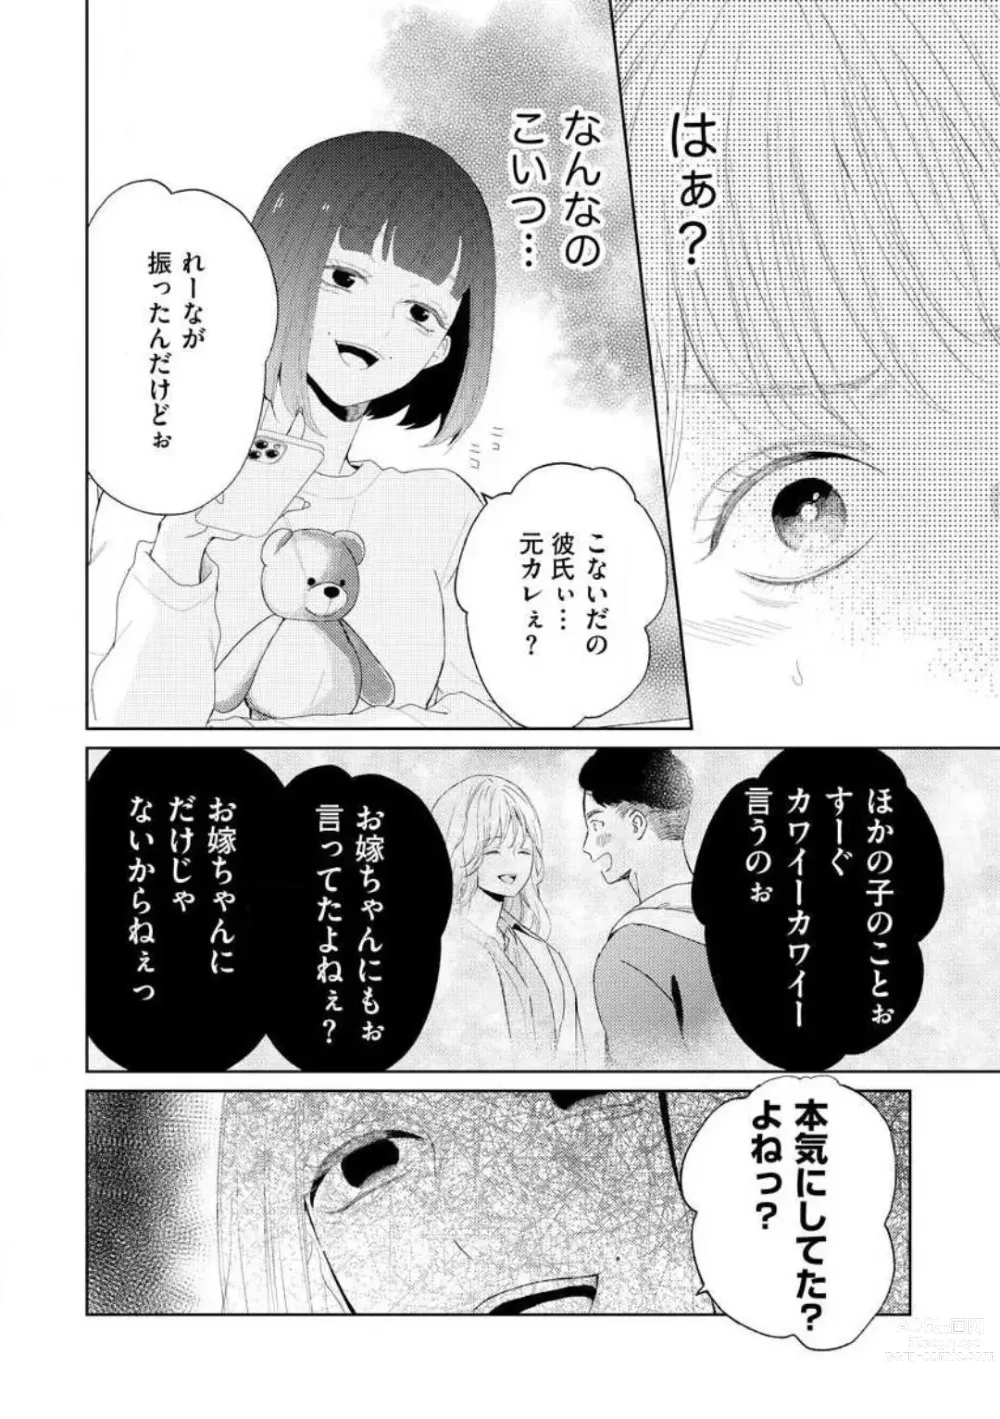 Page 123 of manga 29-sai no Fu Junai 1-5